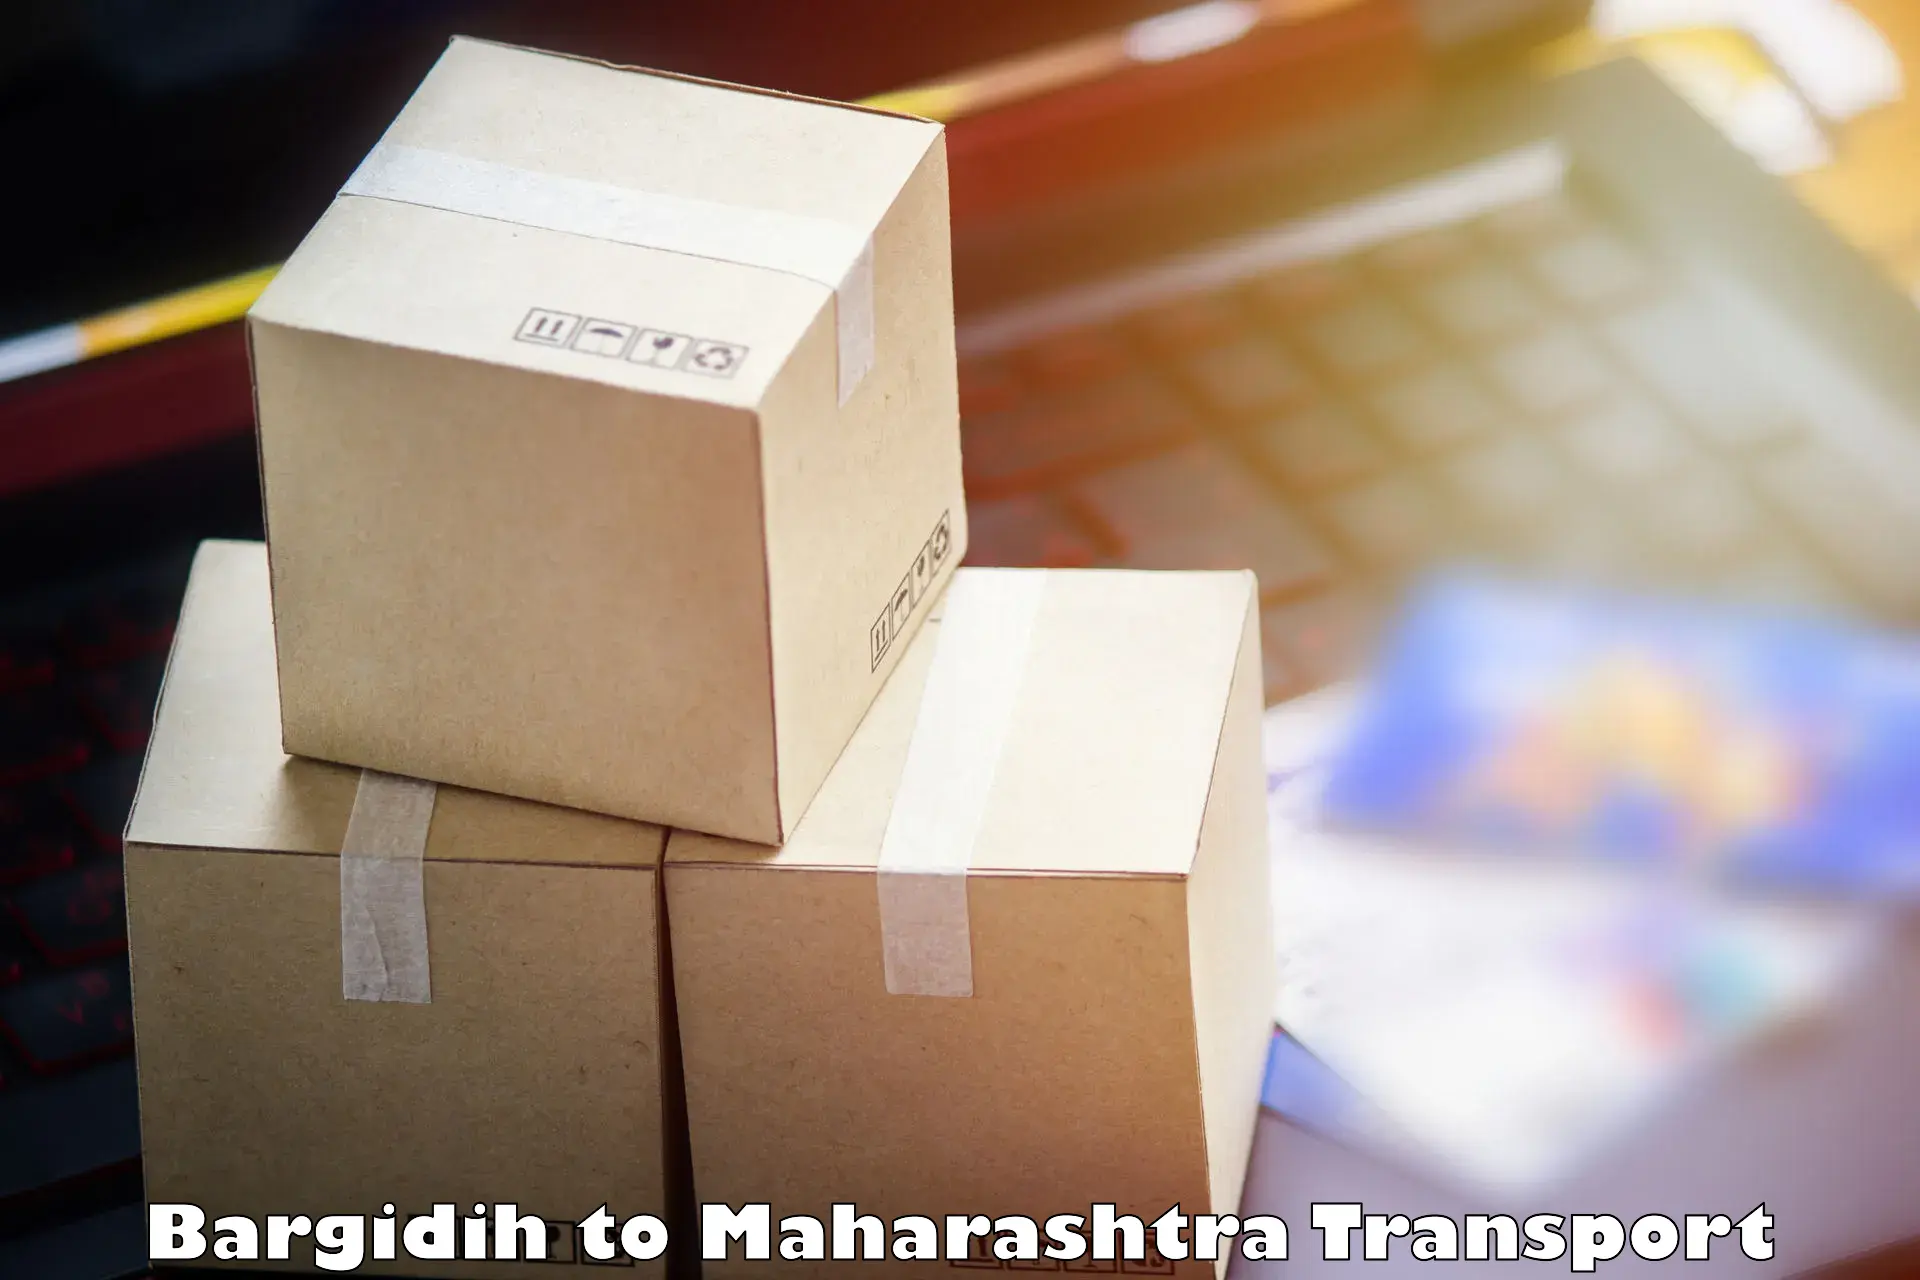 Transport shared services Bargidih to Shindkheda